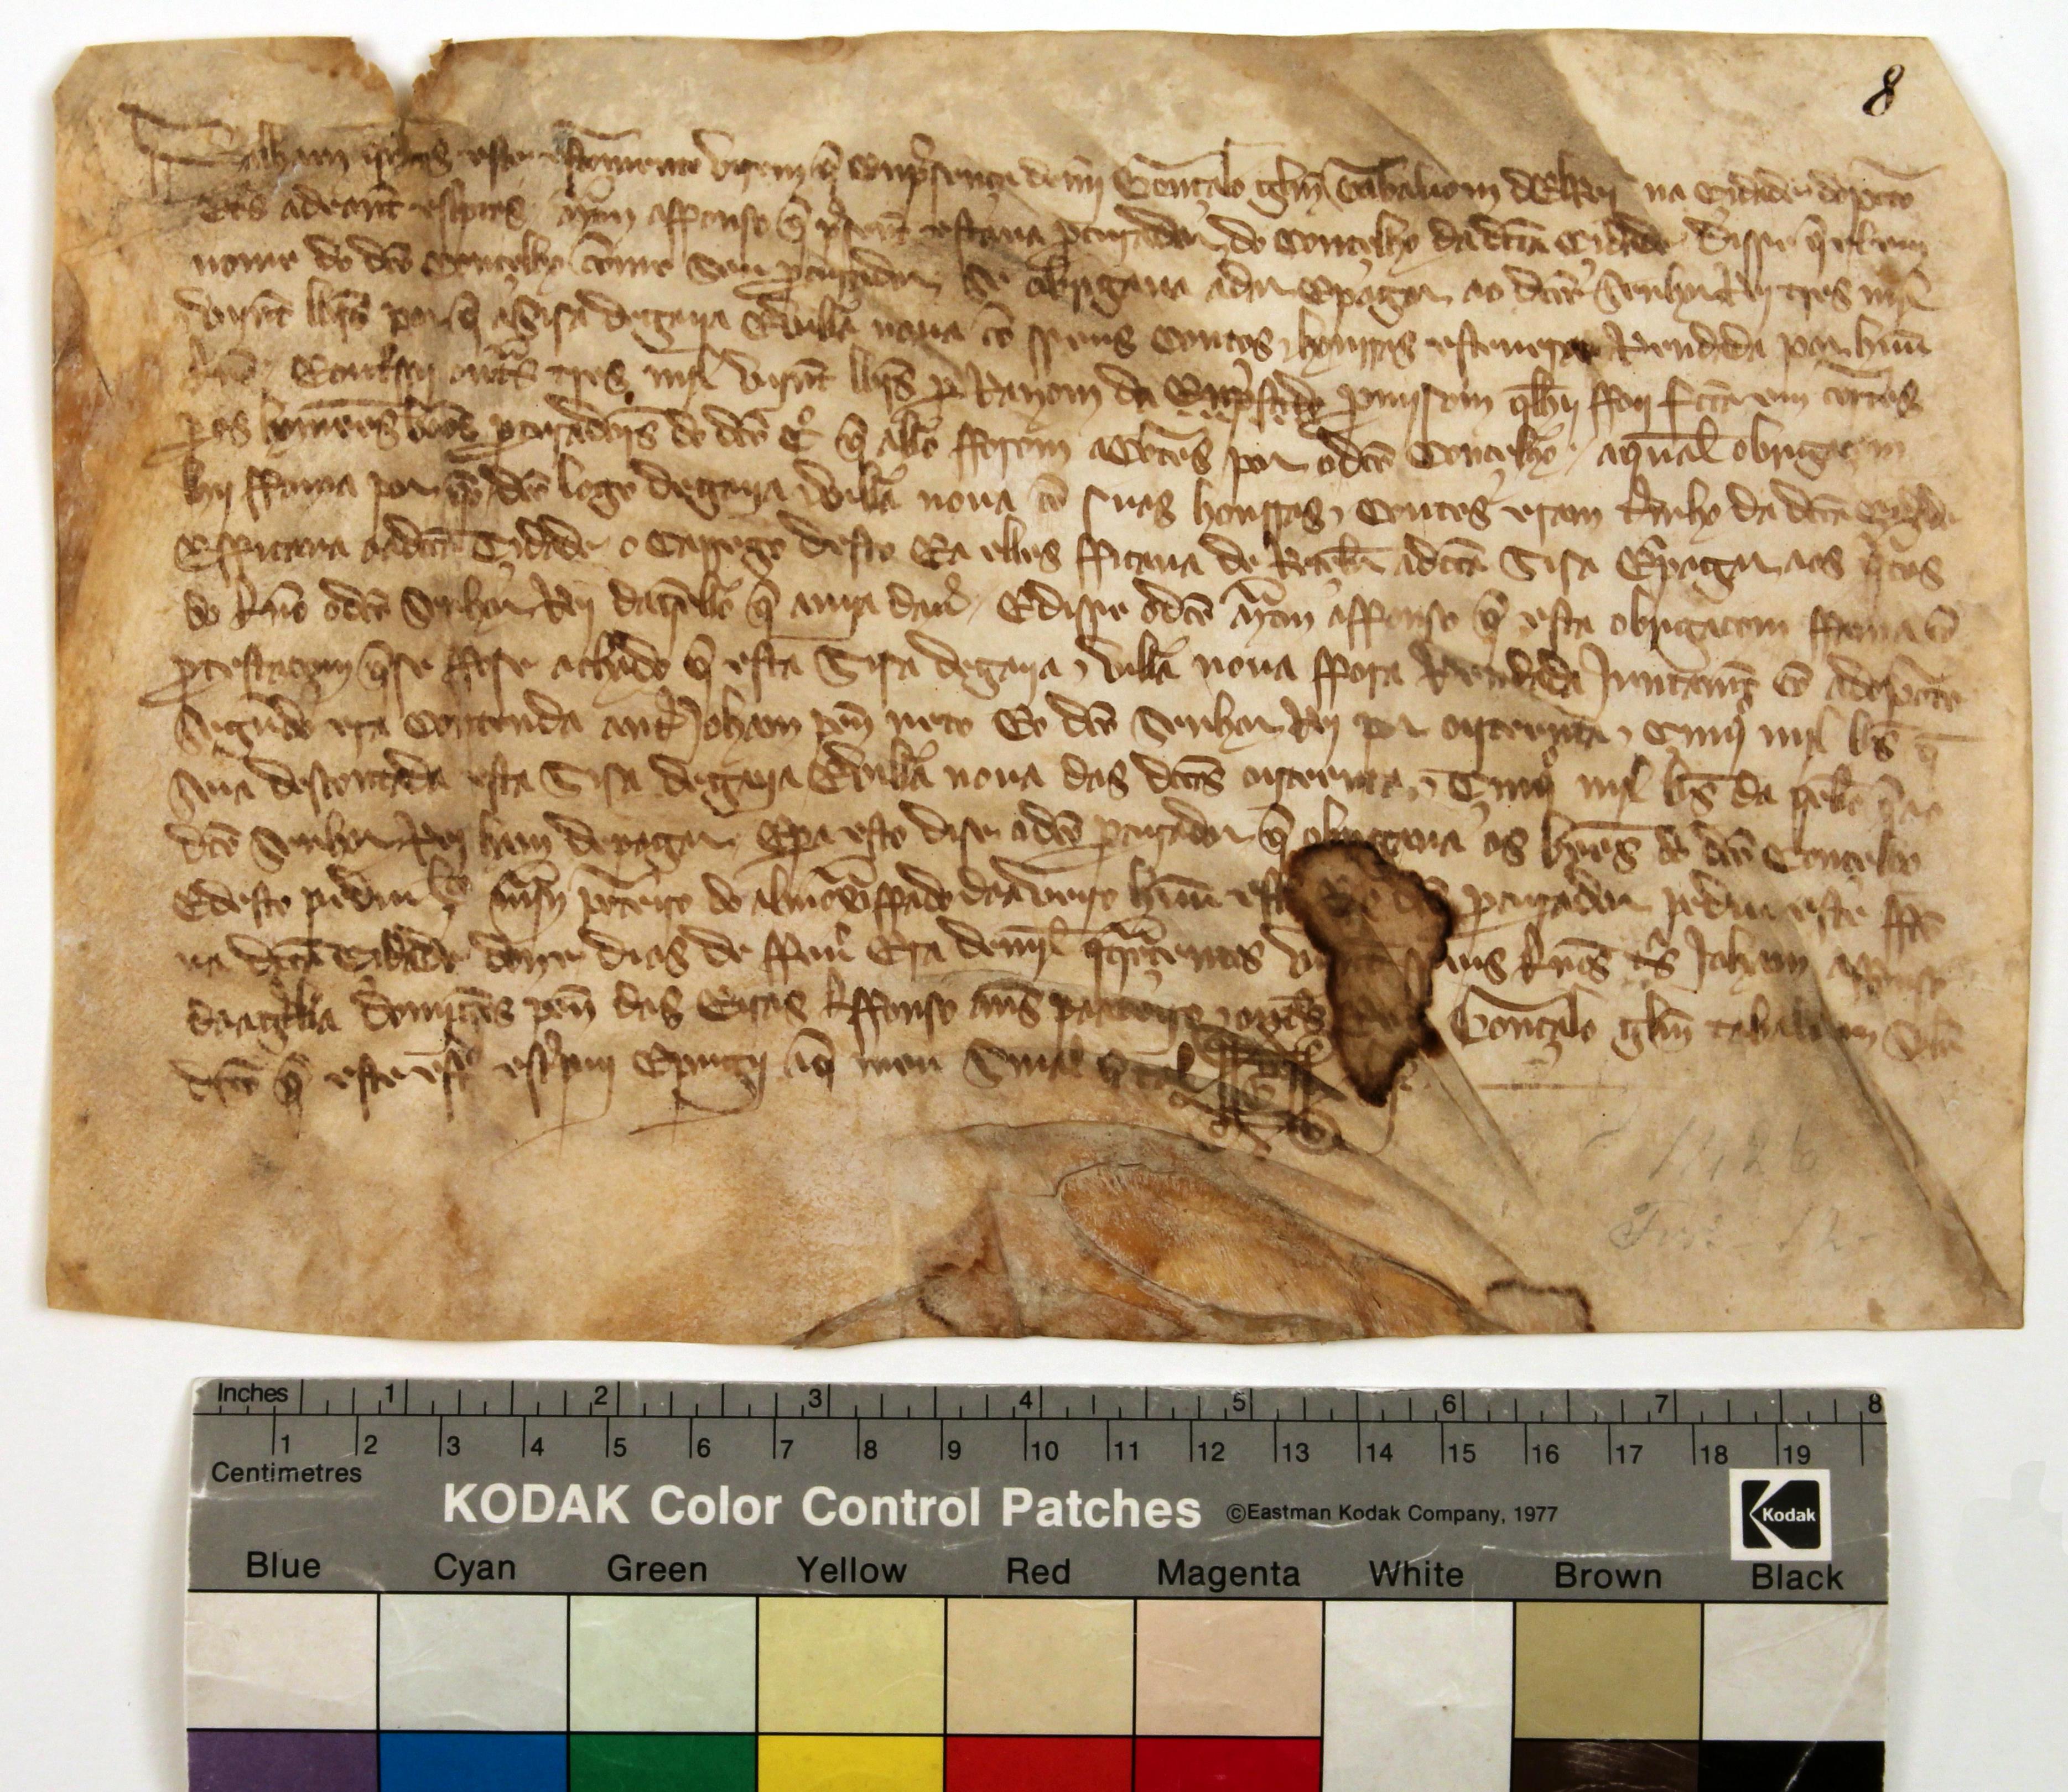 [Carta da Câmara do Porto ao rei em que se regista a obrigação do pagamento da sisa de Gaia e Vila Nova]